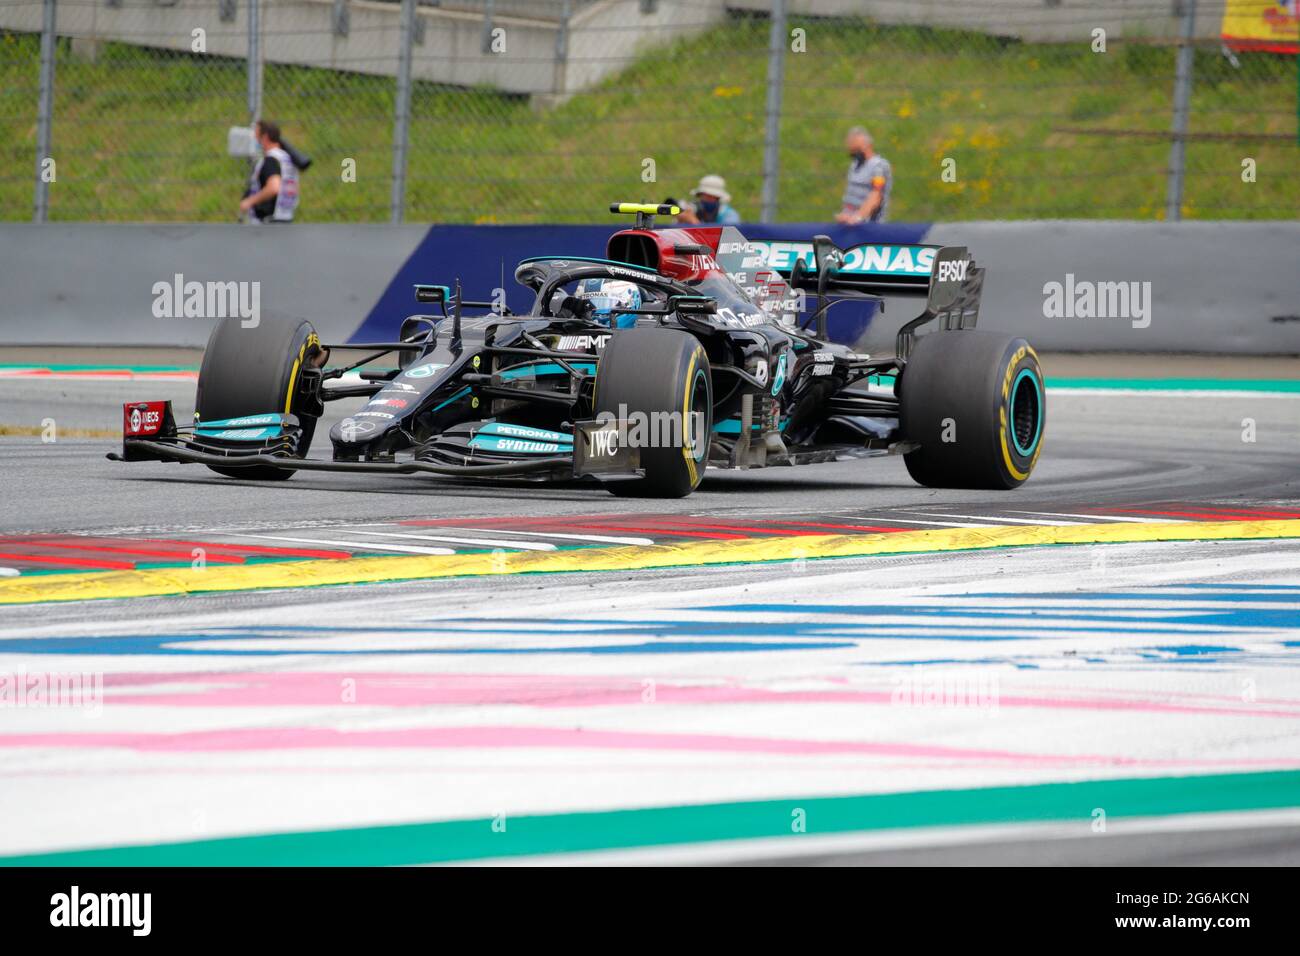 Vallteri Bottas dérive sa Mercedes AMG lors de la course autrichienne du Grand Prix de Formule 1 le 4 juillet 2021 à Spielberg, Autriche. Banque D'Images